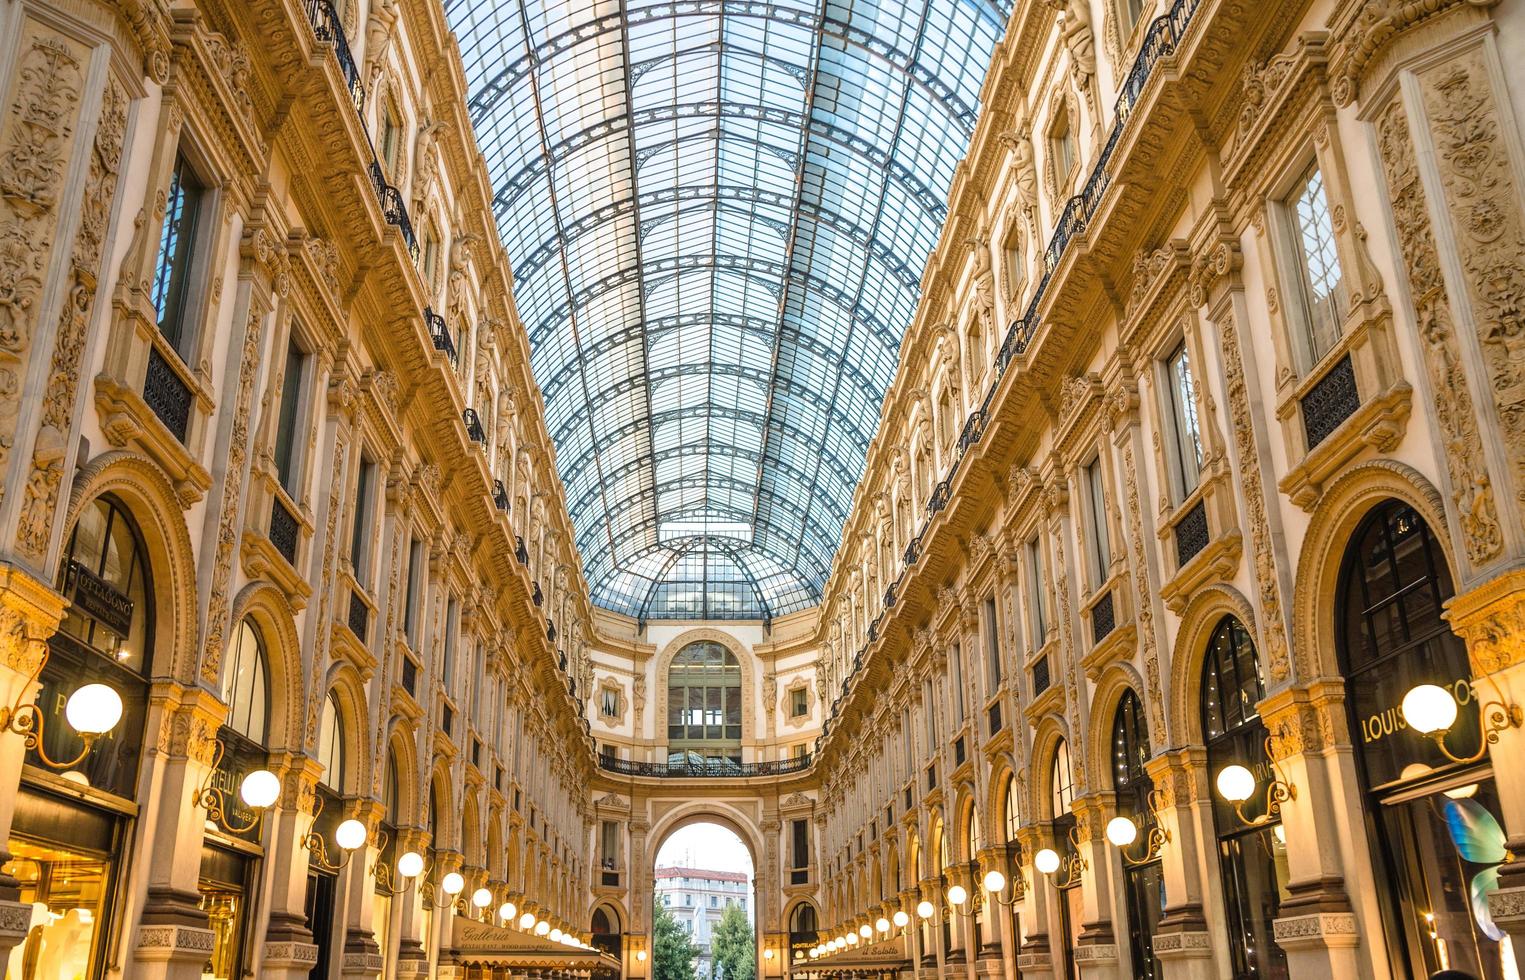 milán, italia, 9 de septiembre de 2018 galería vittorio emanuele ii famoso centro comercial de lujo foto